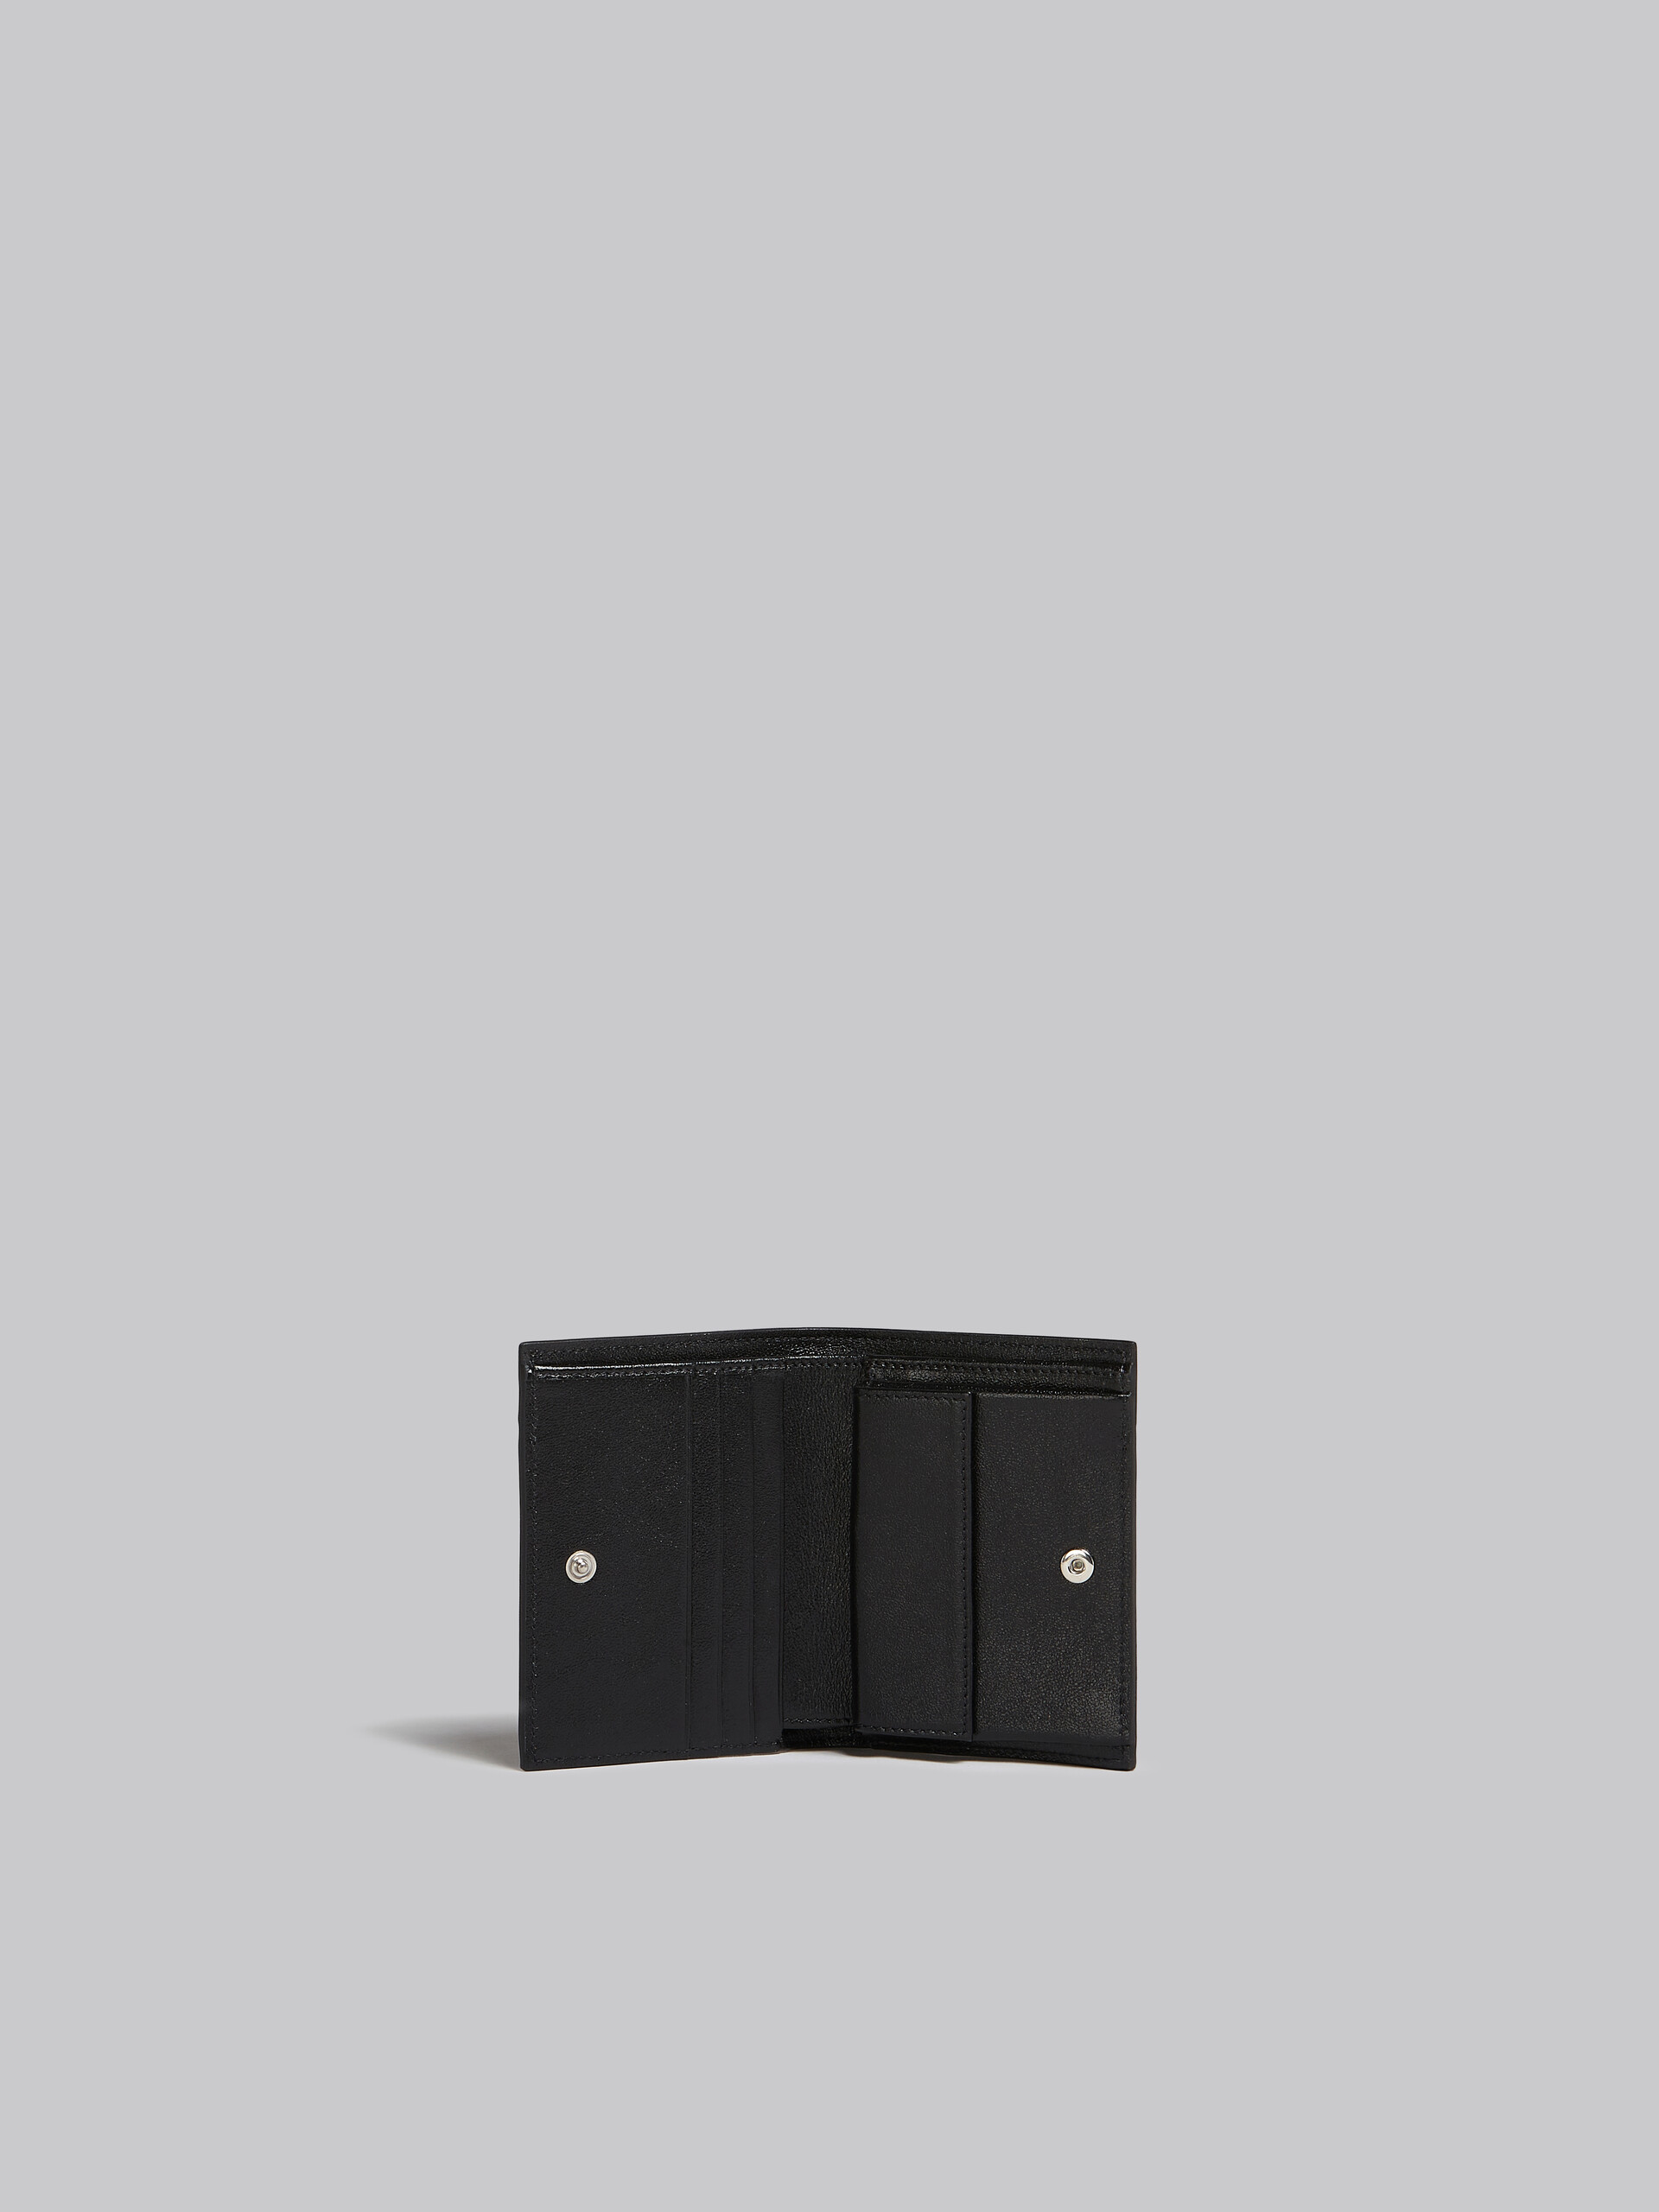 ネイビーブルーとブラック レザー製二つ折りウォレット - 財布 - Image 2